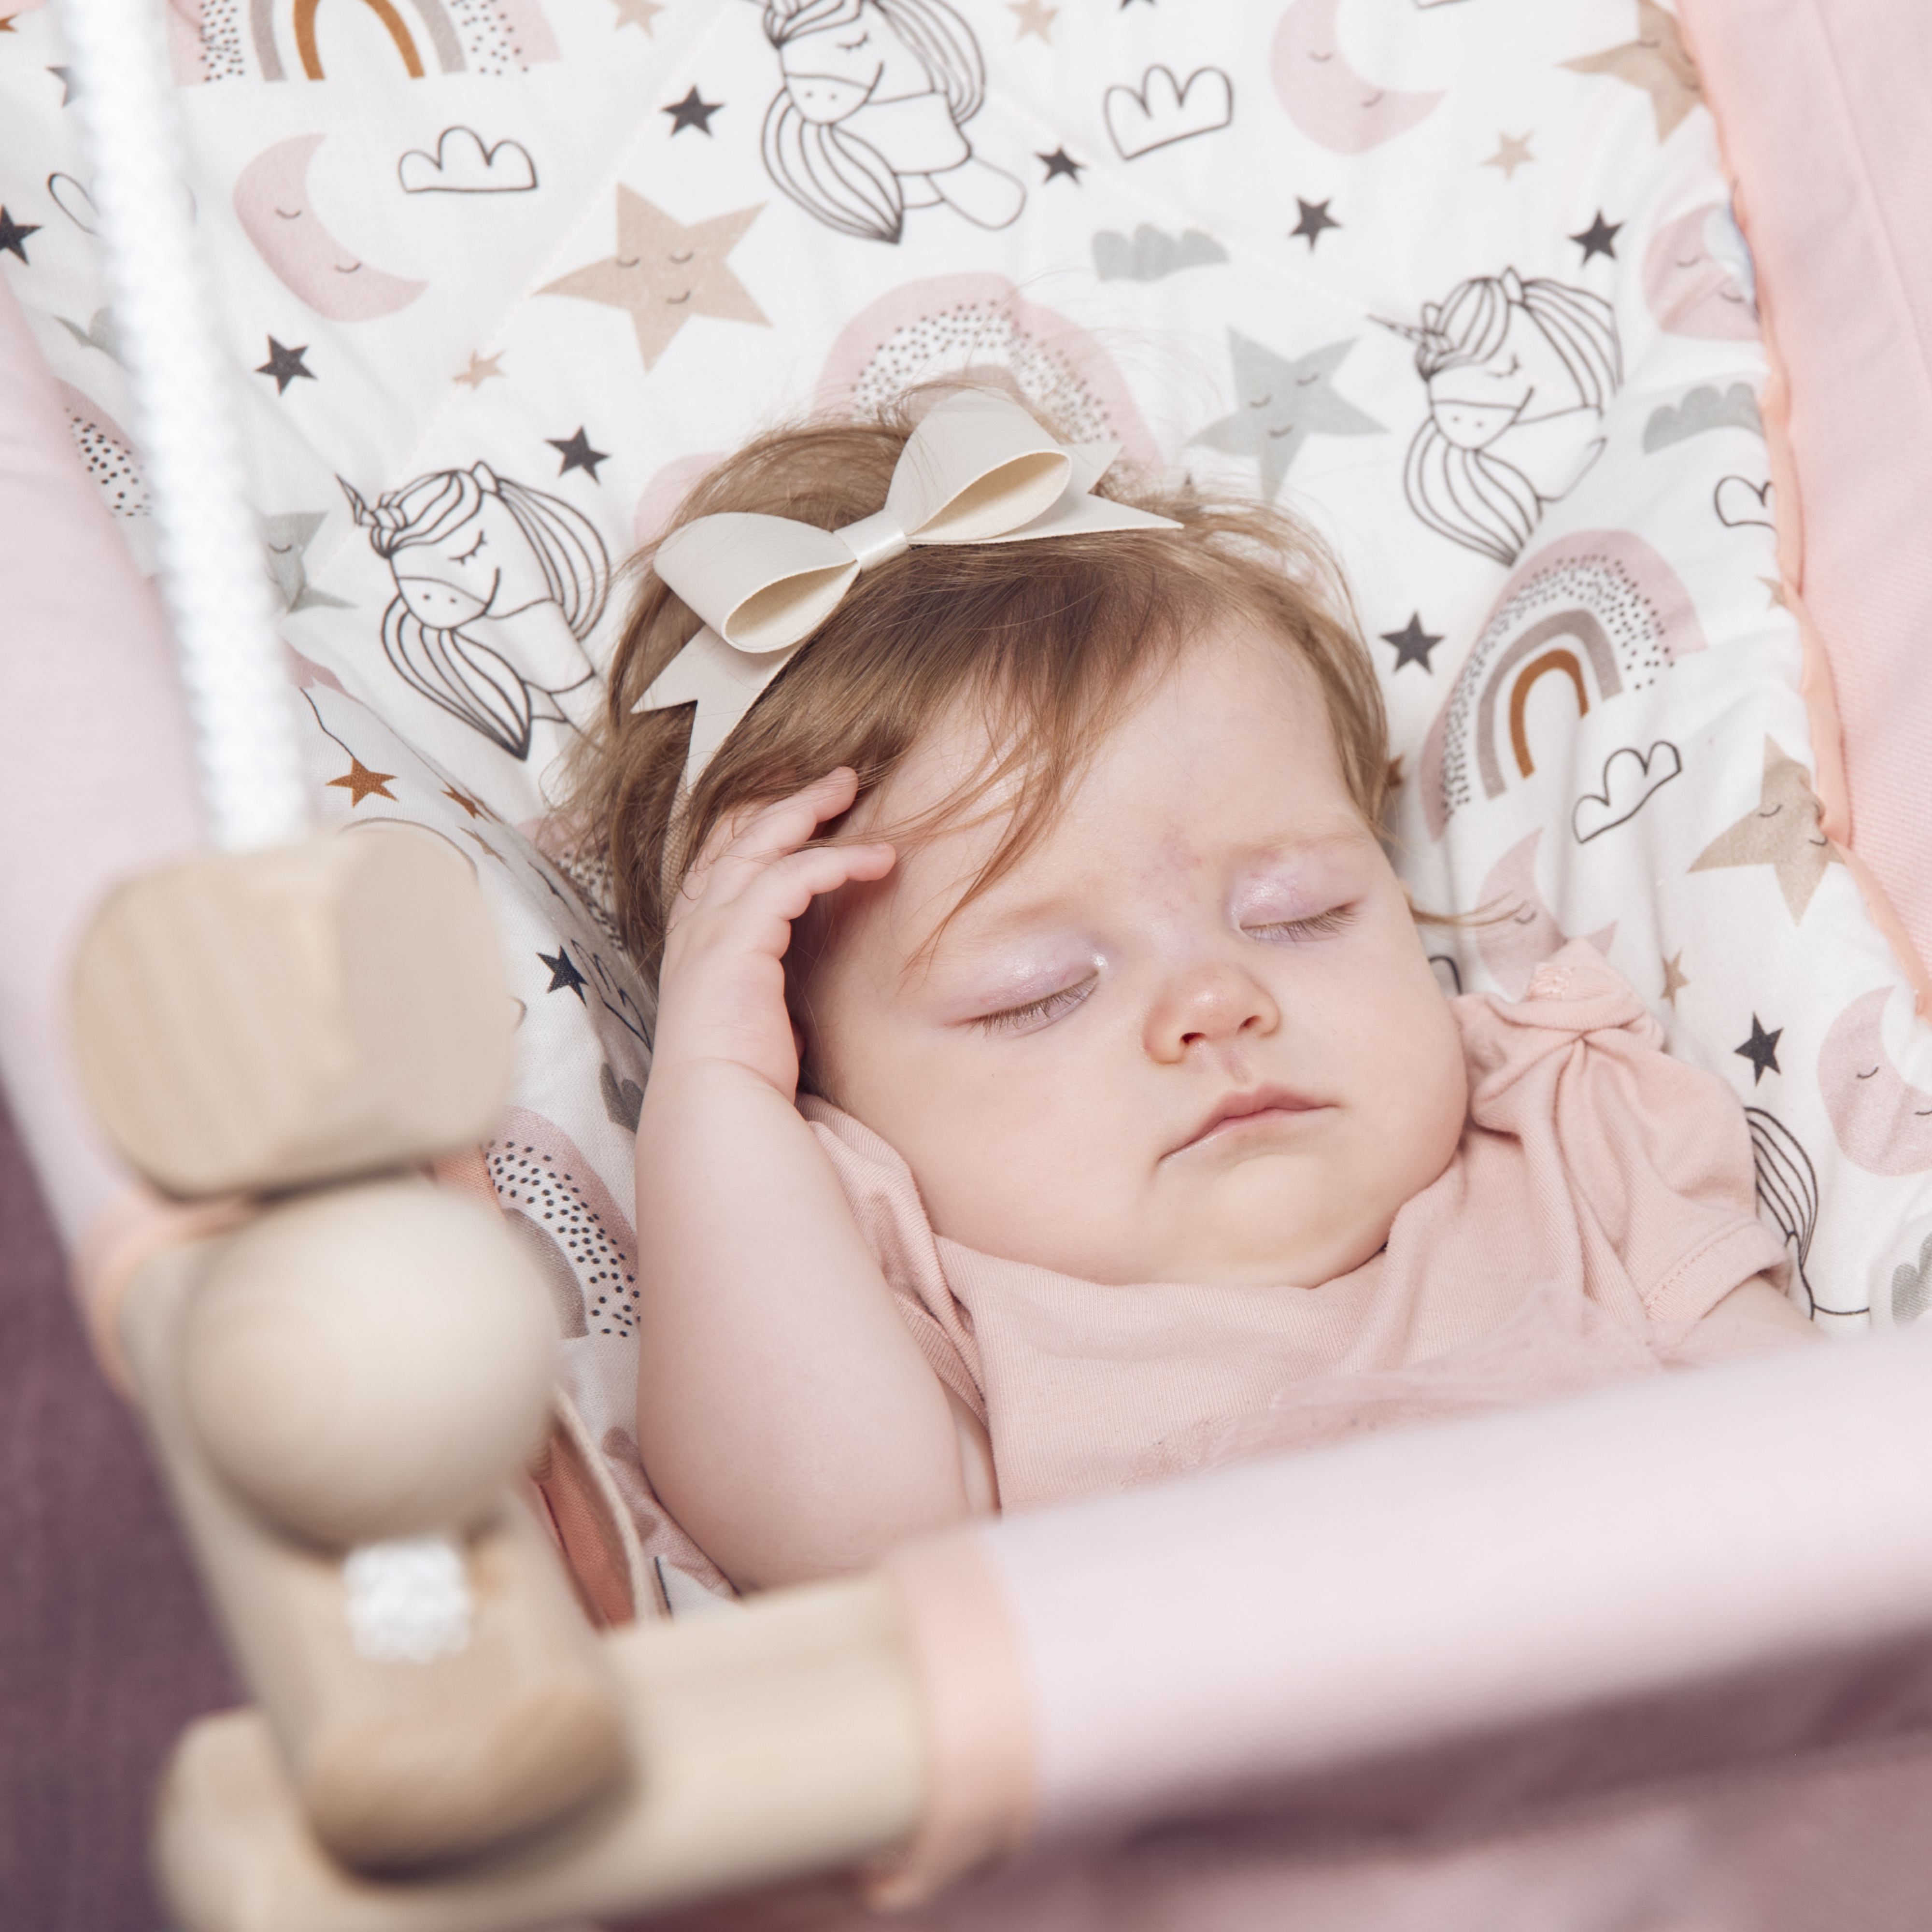 Mennyi időt aludhat a baba a hintában?